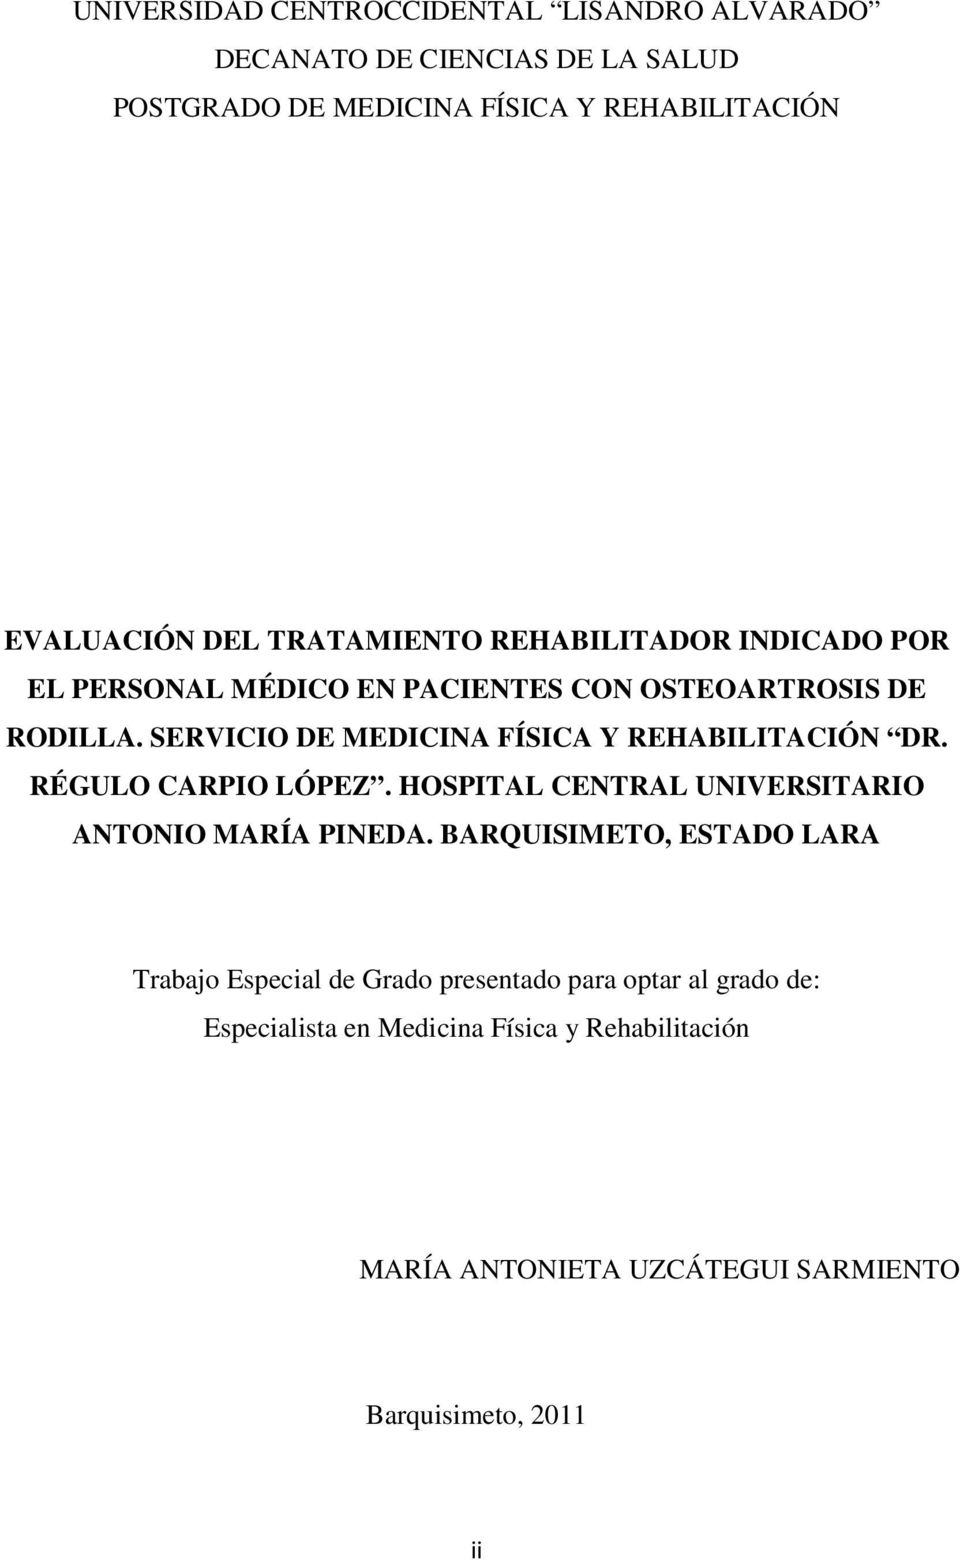 SERVICIO DE MEDICINA FÍSICA Y REHABILITACIÓN DR. RÉGULO CARPIO LÓPEZ. HOSPITAL CENTRAL UNIVERSITARIO ANTONIO MARÍA PINEDA.